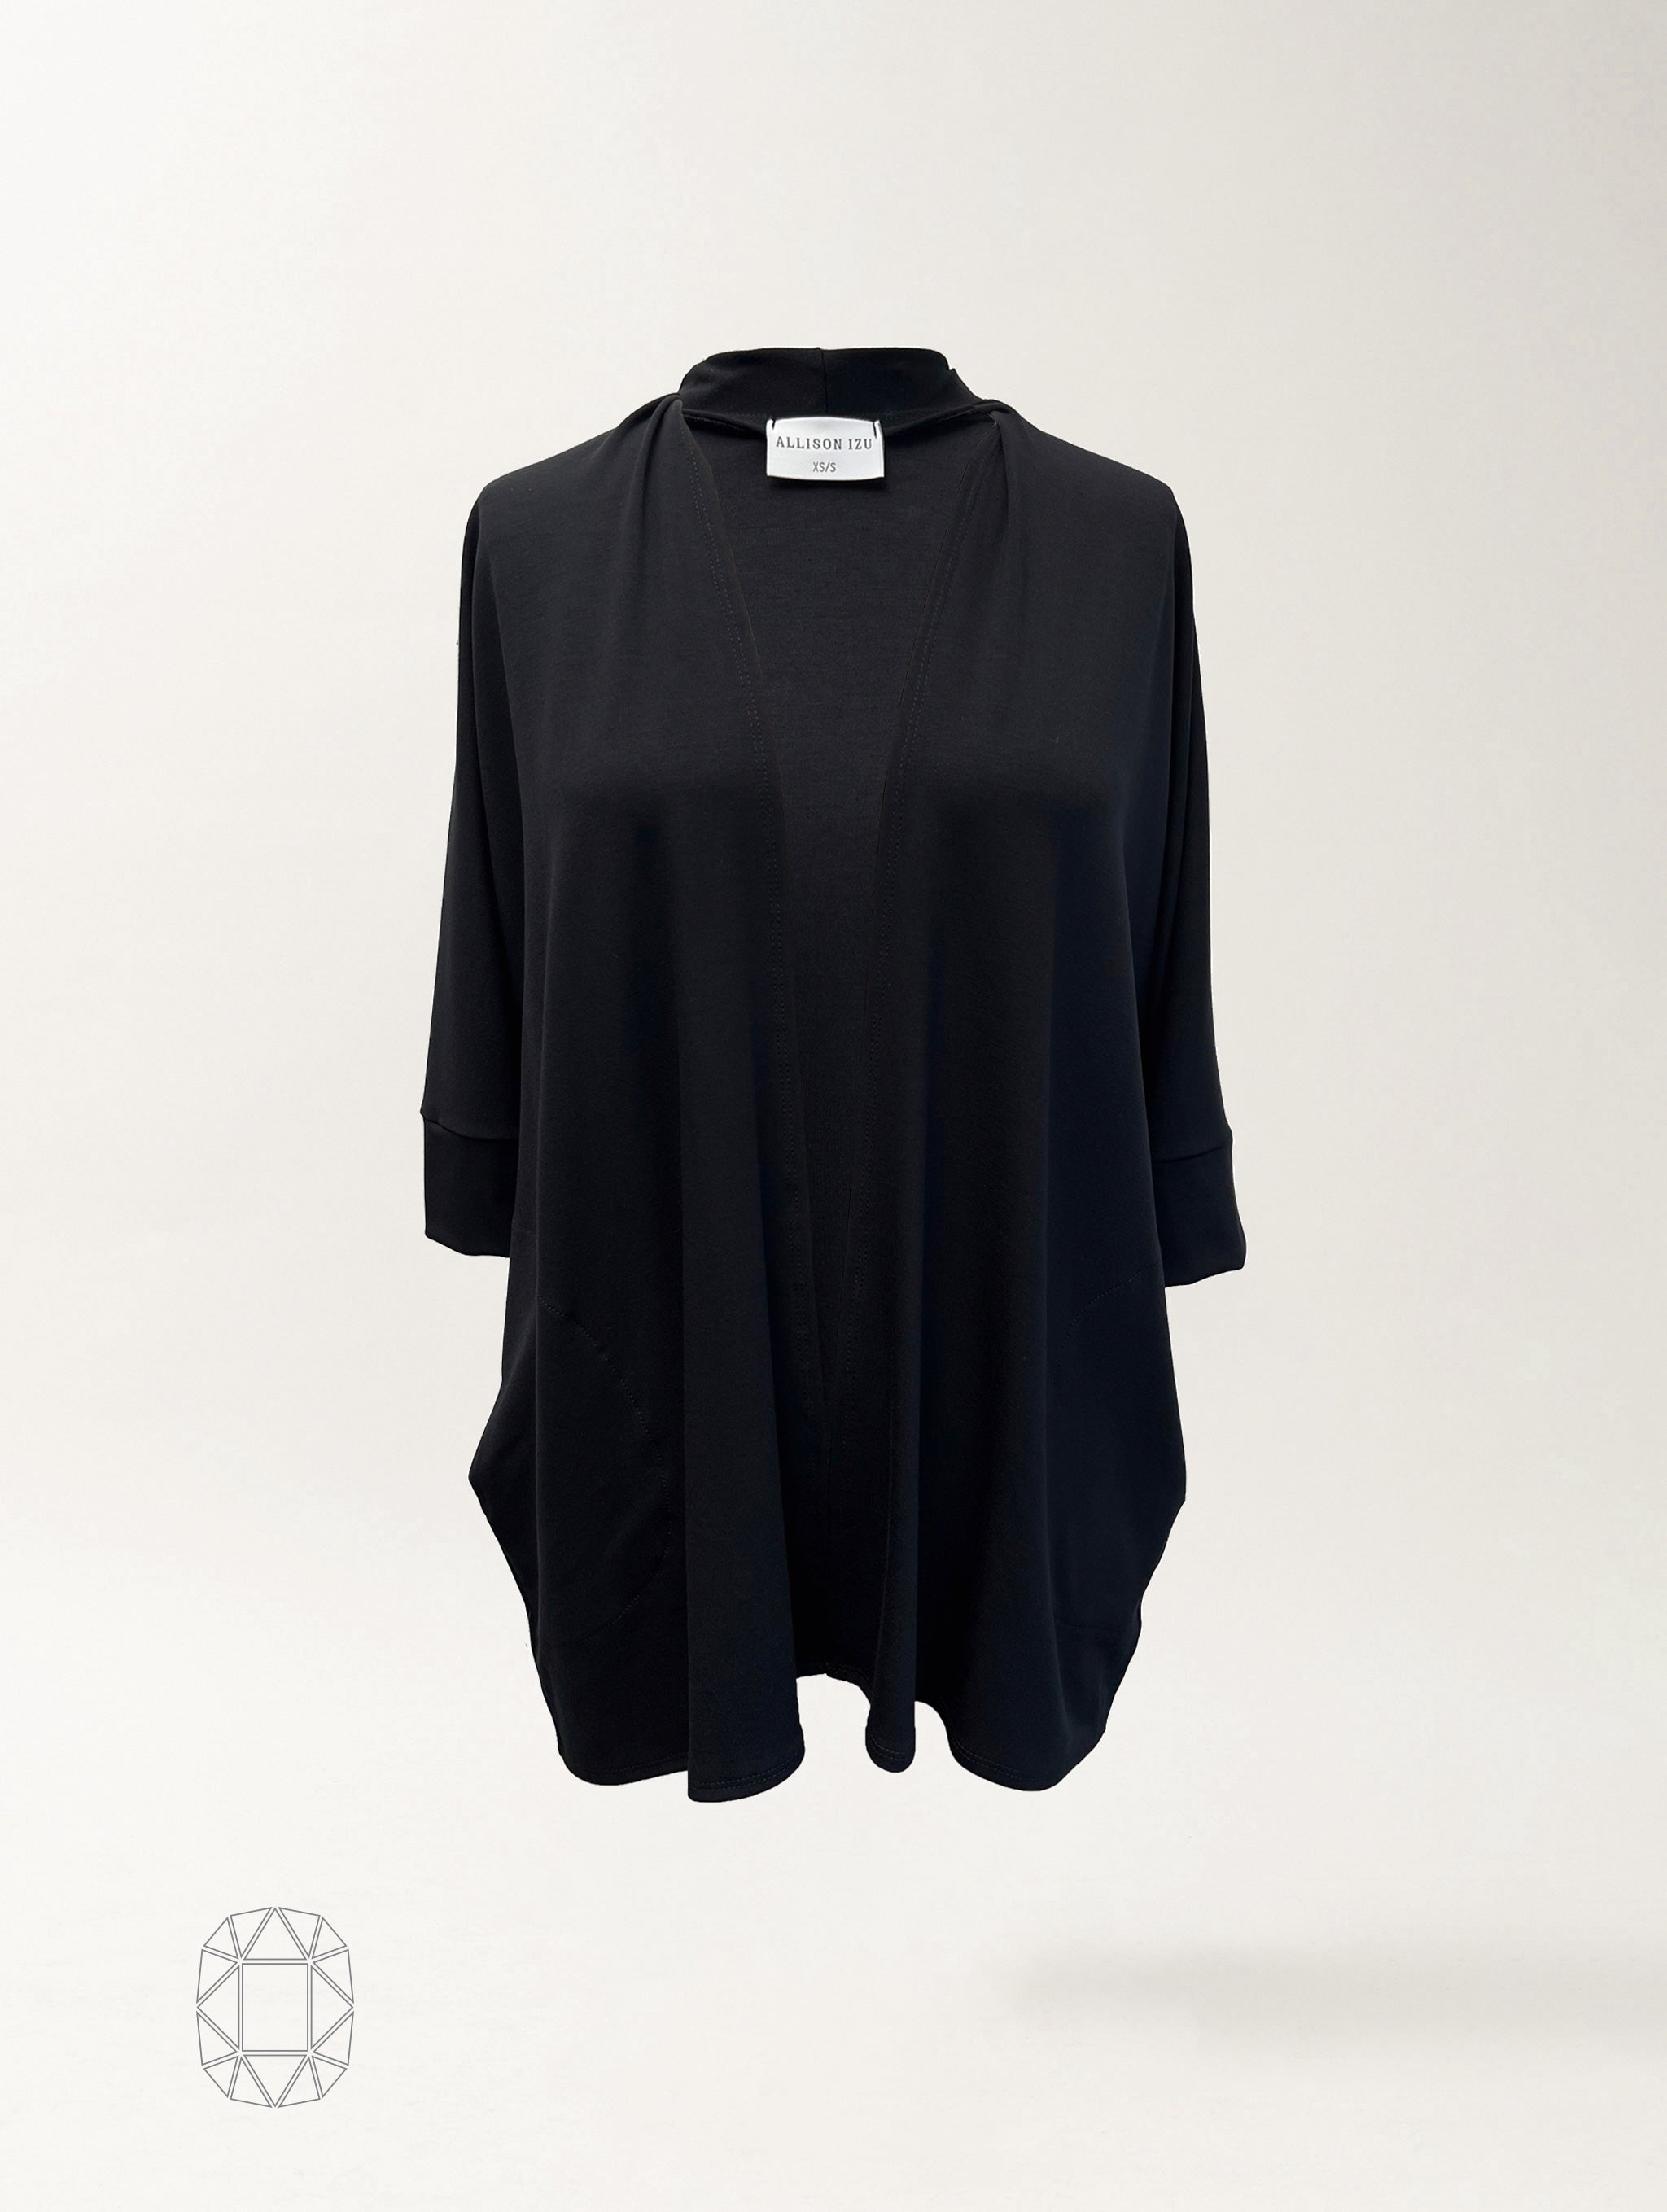 Loren Kimono - Black Rayon Jersey